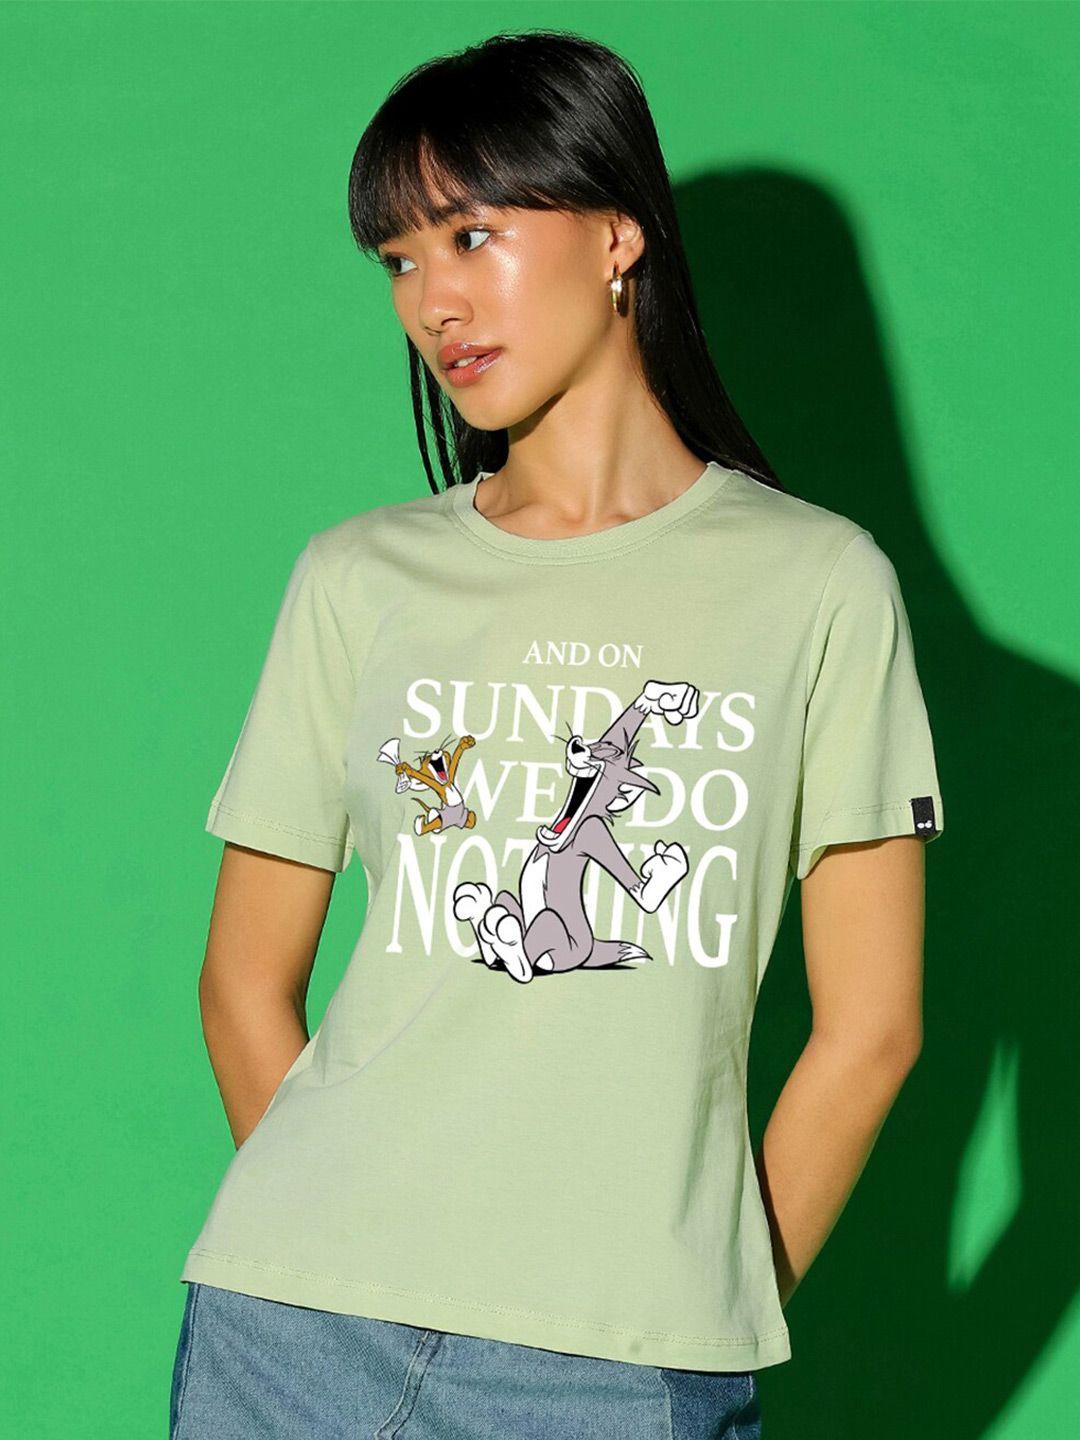 bewakoof sundays we do nothing graphic printed t-shirt